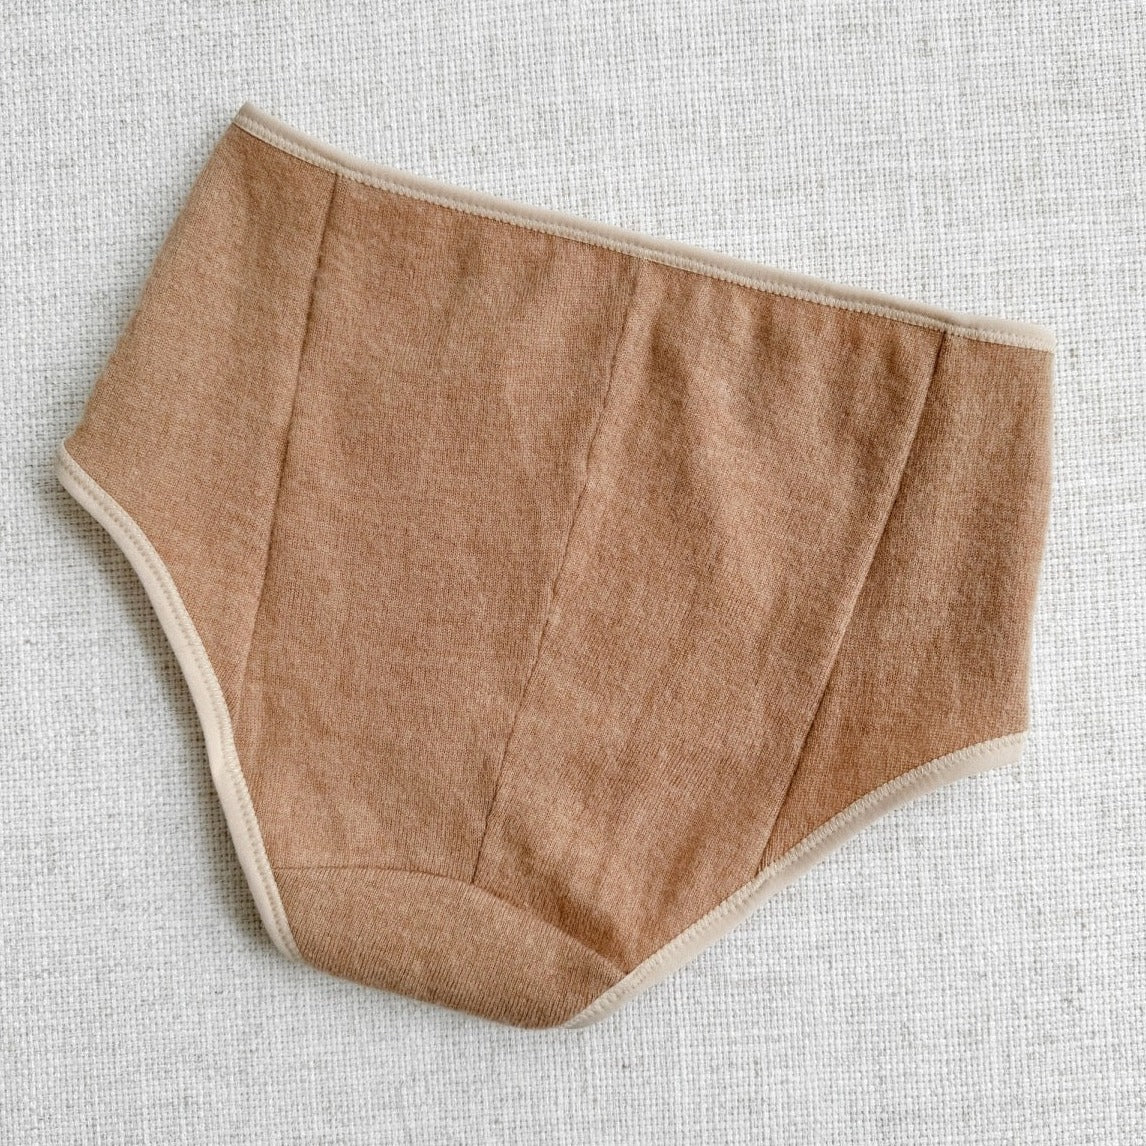 natural neutral. beige cashmere underwear for women, shop best cashmere and wool underwear made in Canada